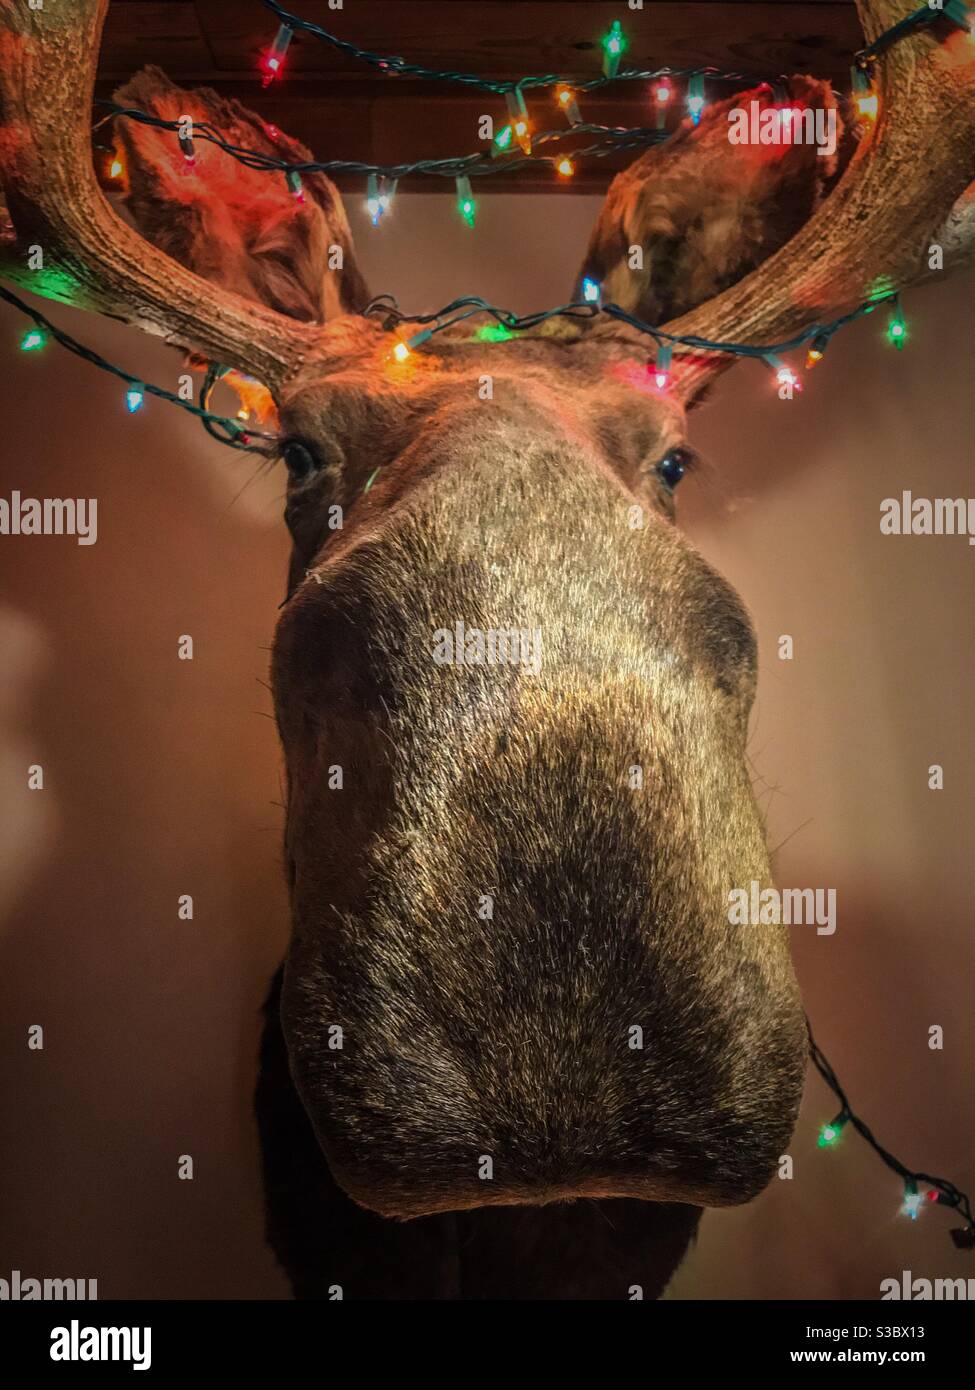 Colorate luci di Natale decorano la testa alce Foto Stock